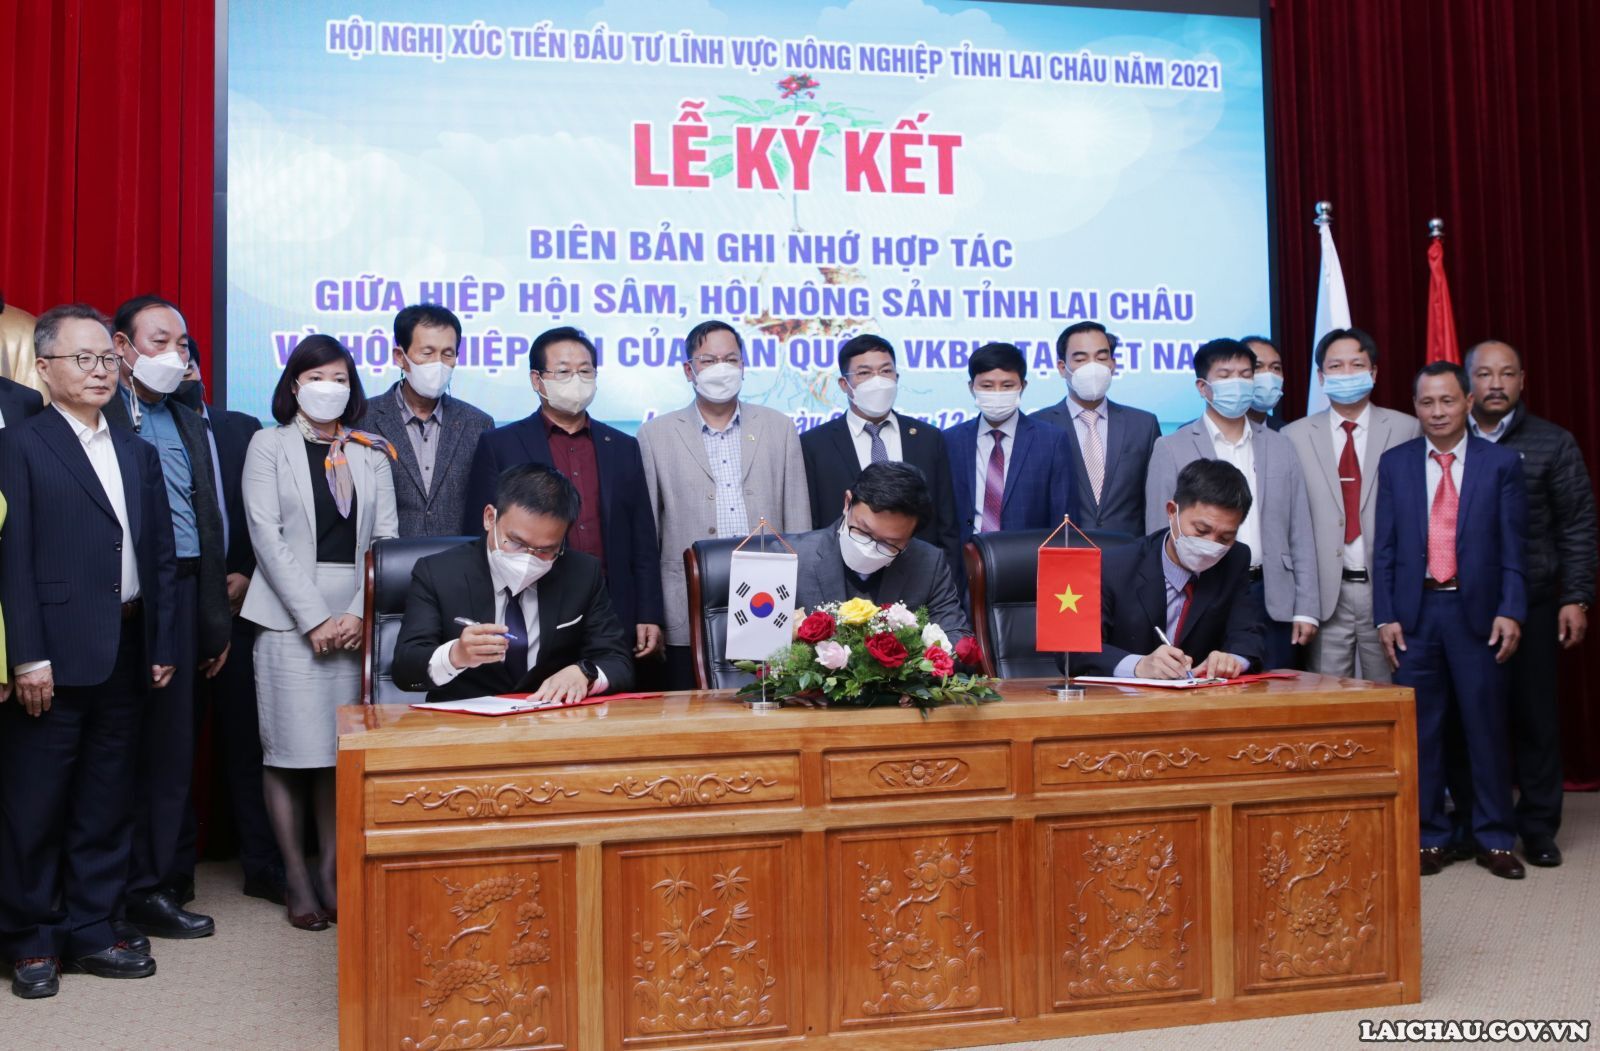 Tọa đàm xúc tiến đầu tư giữa Hiệp hội Sâm, Hội nông sản tỉnh Lai Châu và Hội – Hiệp hội của Hàn Quốc, VKBIA tại Việt Nam - Ảnh minh hoạ 7